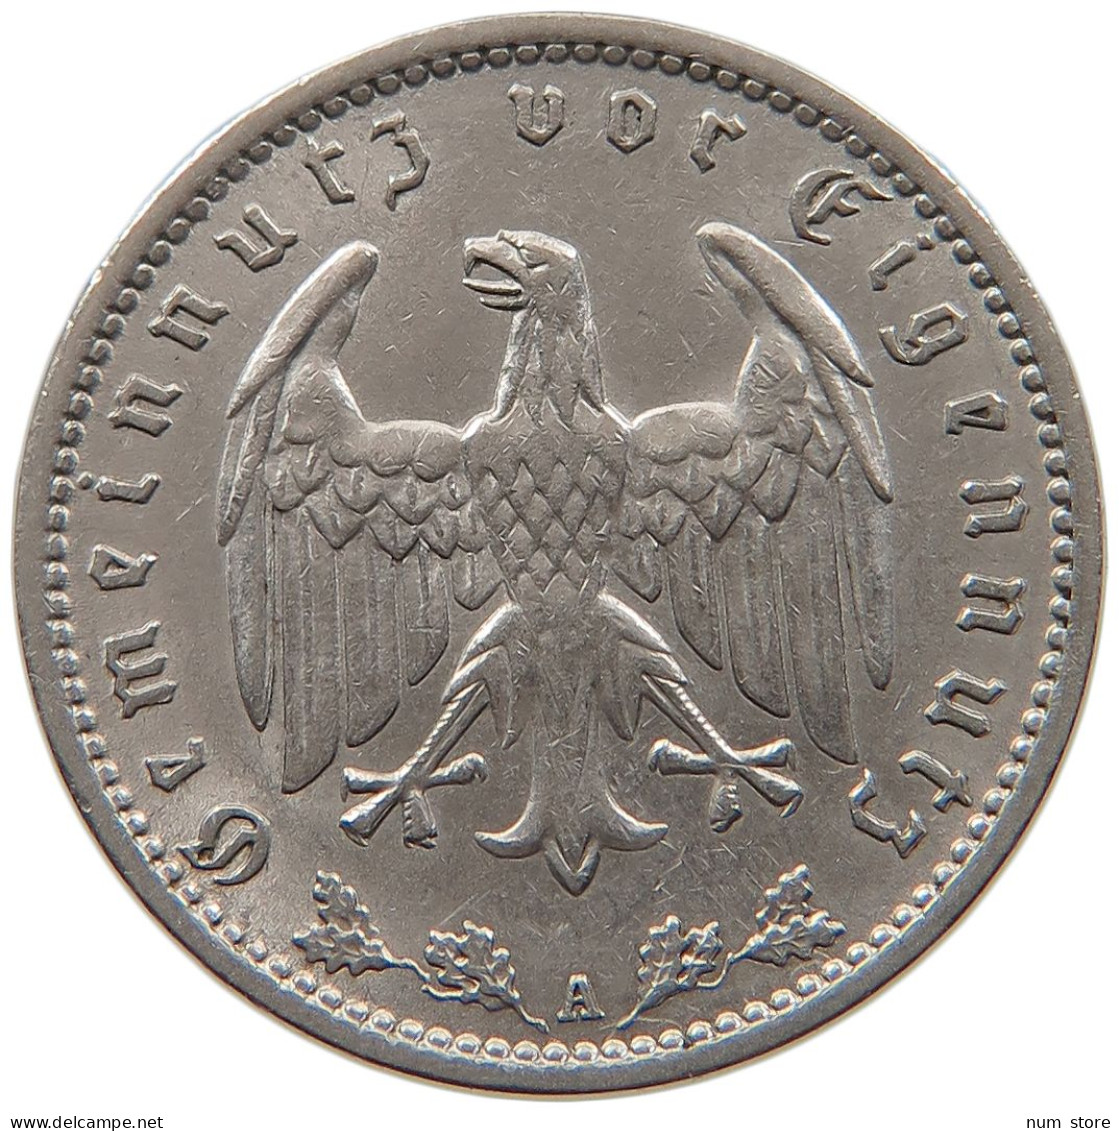 DRITTES REICH MARK 1935 A  #MA 099330 - 1 Reichsmark